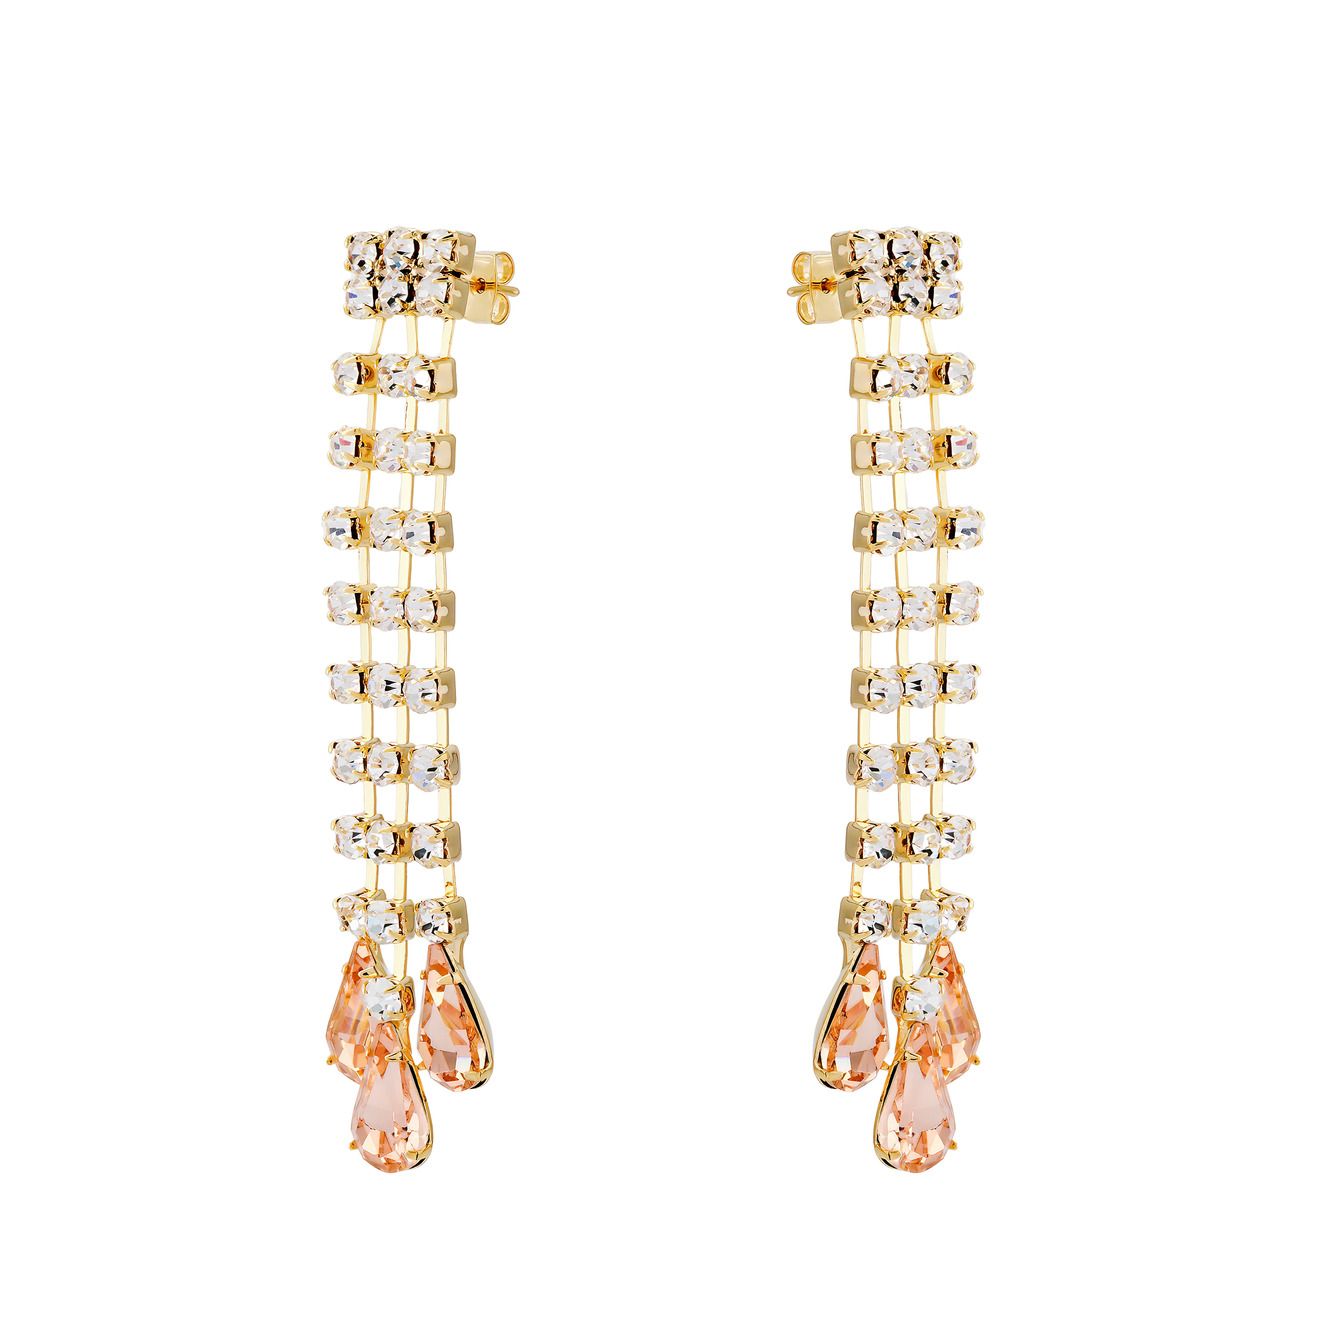 Herald Percy Золотистые серьги-дождики с дорожками из кристаллов и розовыми каплями